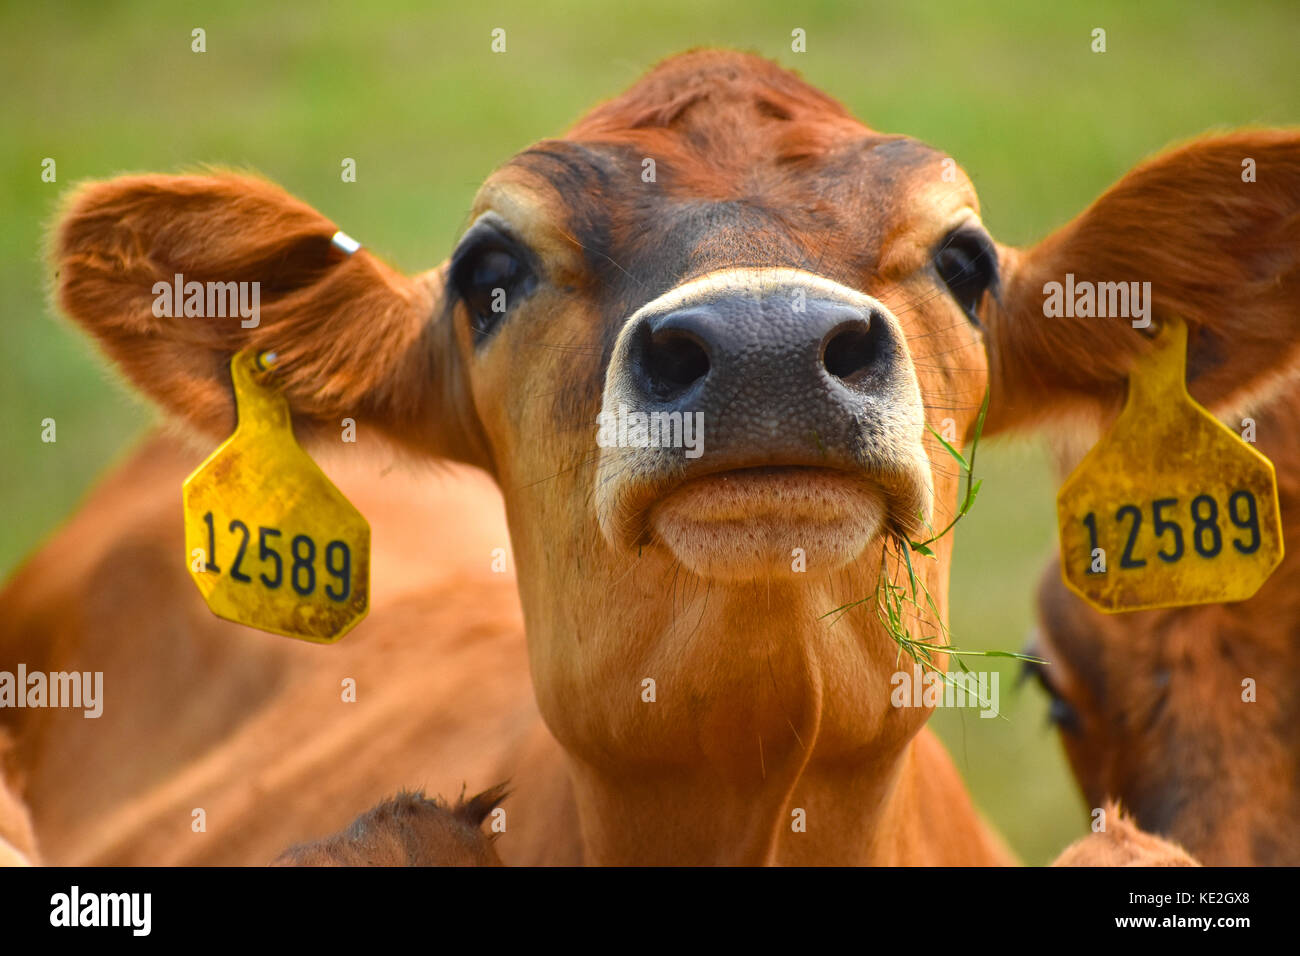 Kuh Gesicht und Kopf Nahaufnahme mit Tags in Ihren Ohren Ihre ID-Nummer angezeigt. Stockfoto